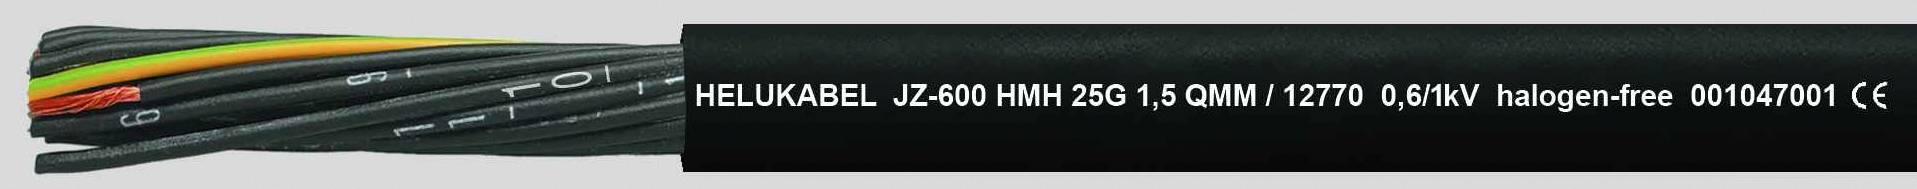 HELUKABEL JZ-600 HMH Steuerleitung 5 G 0.75 mm² Schwarz 12740-500 500 m